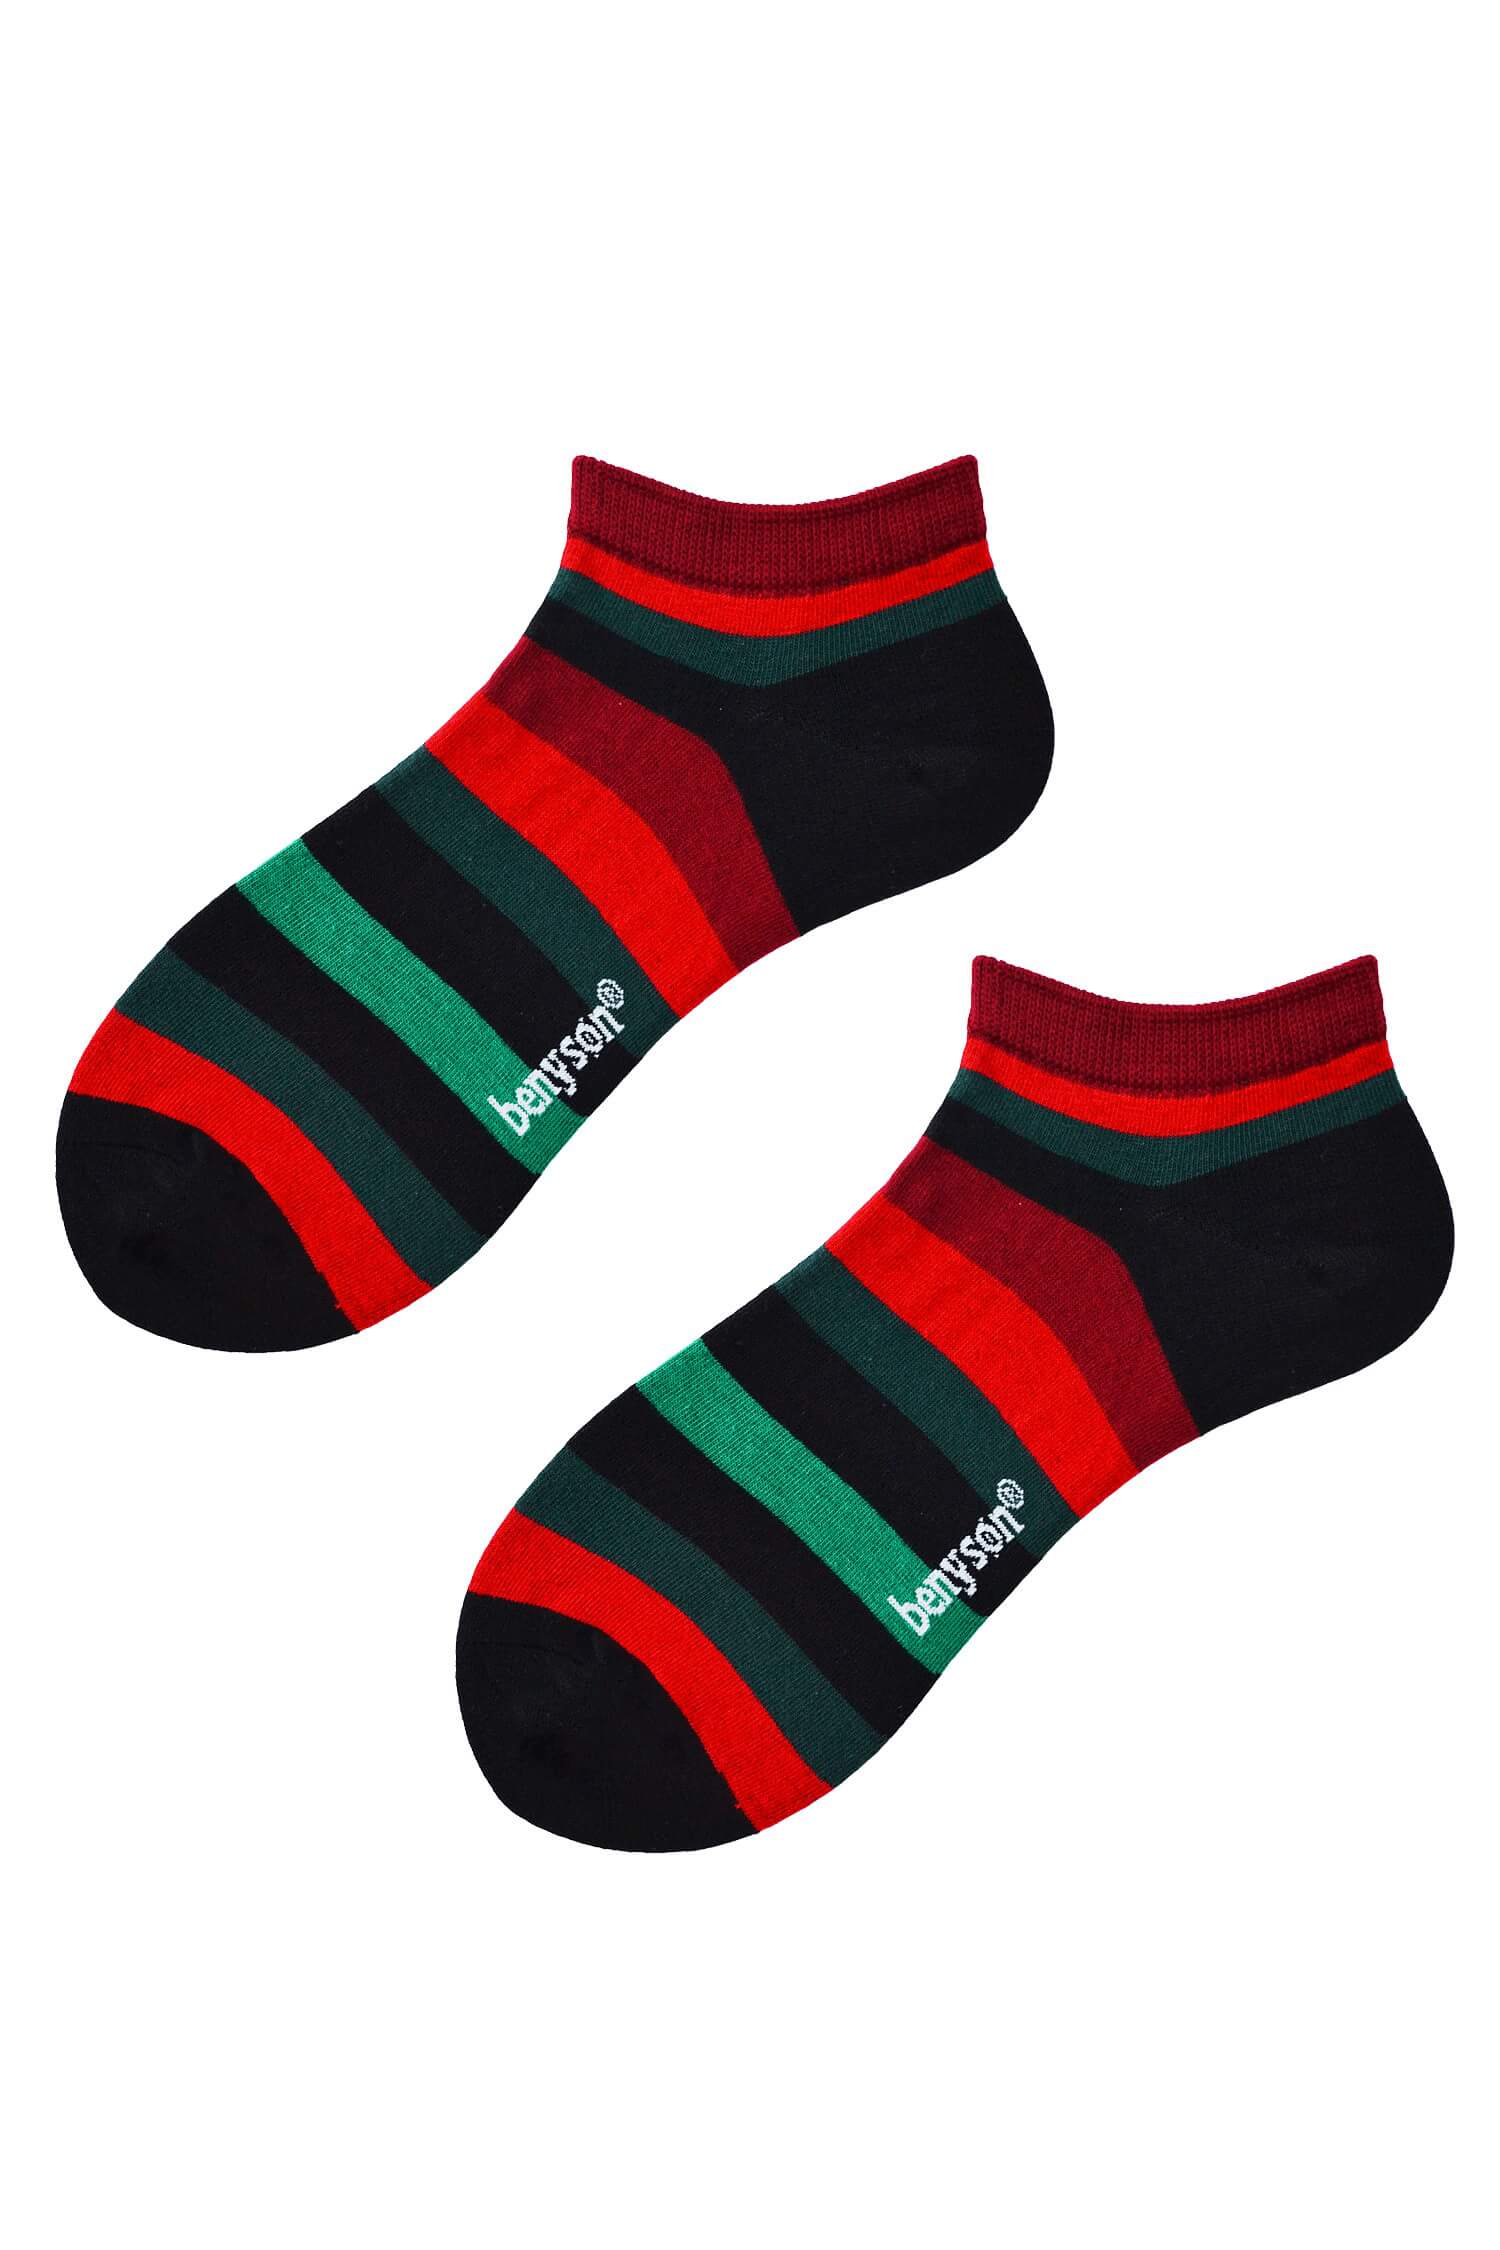 Pánské kotníčkové ponožky pruhy 5611 42-46 vícebarevná